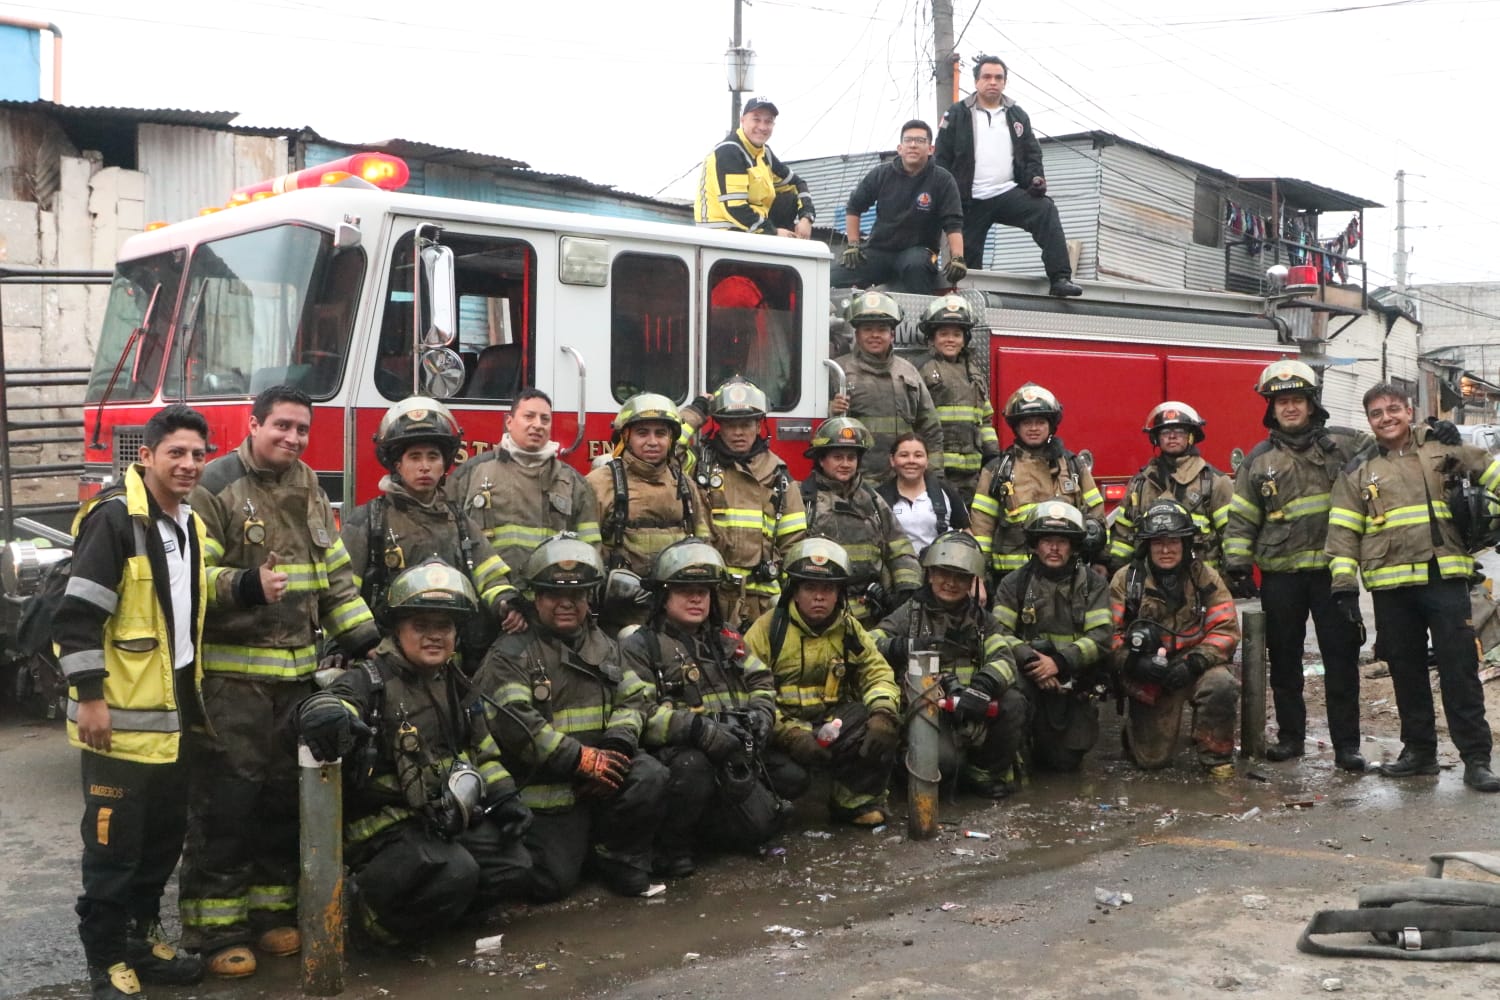 Más de 20 bomberos trabajaron para sofocar el incendio, en el descombramiento y enfriamiento de la vivienda.